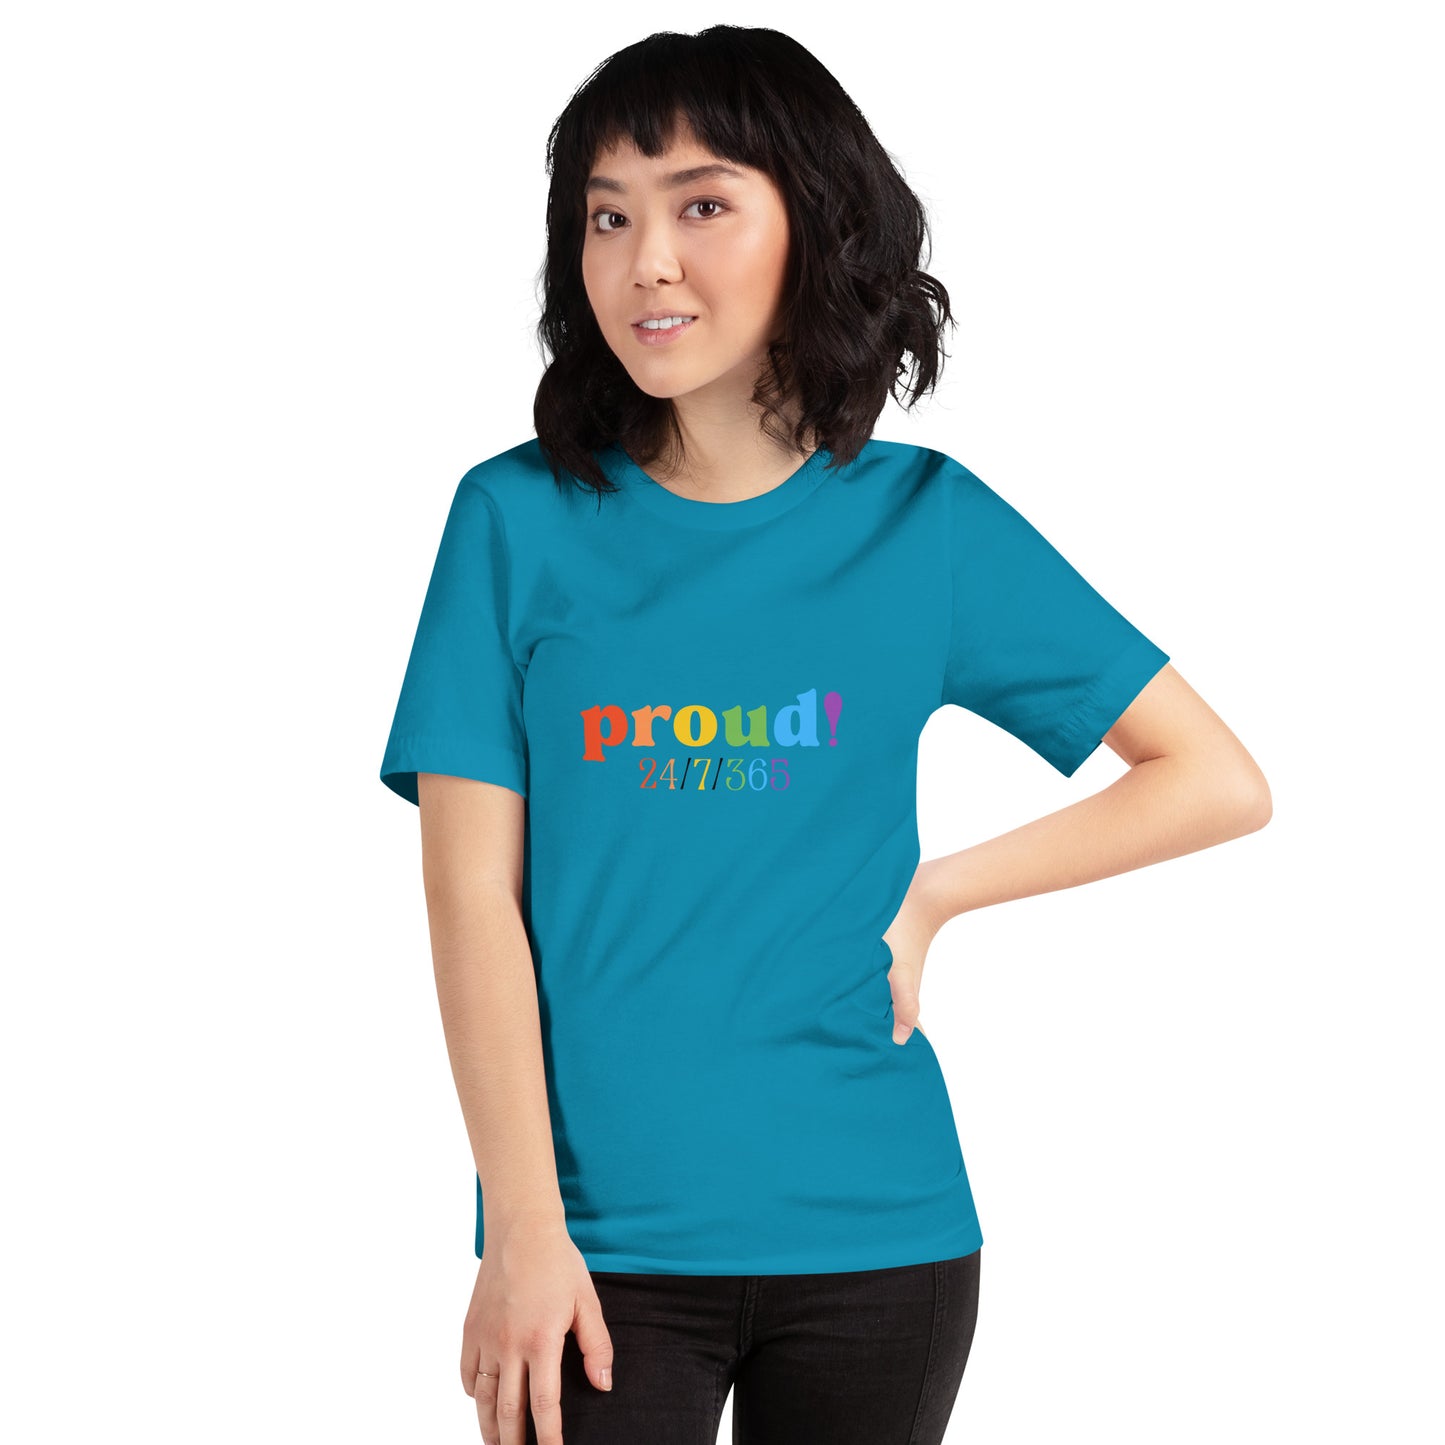 Proud 24/7/365 - Unisex t-shirt